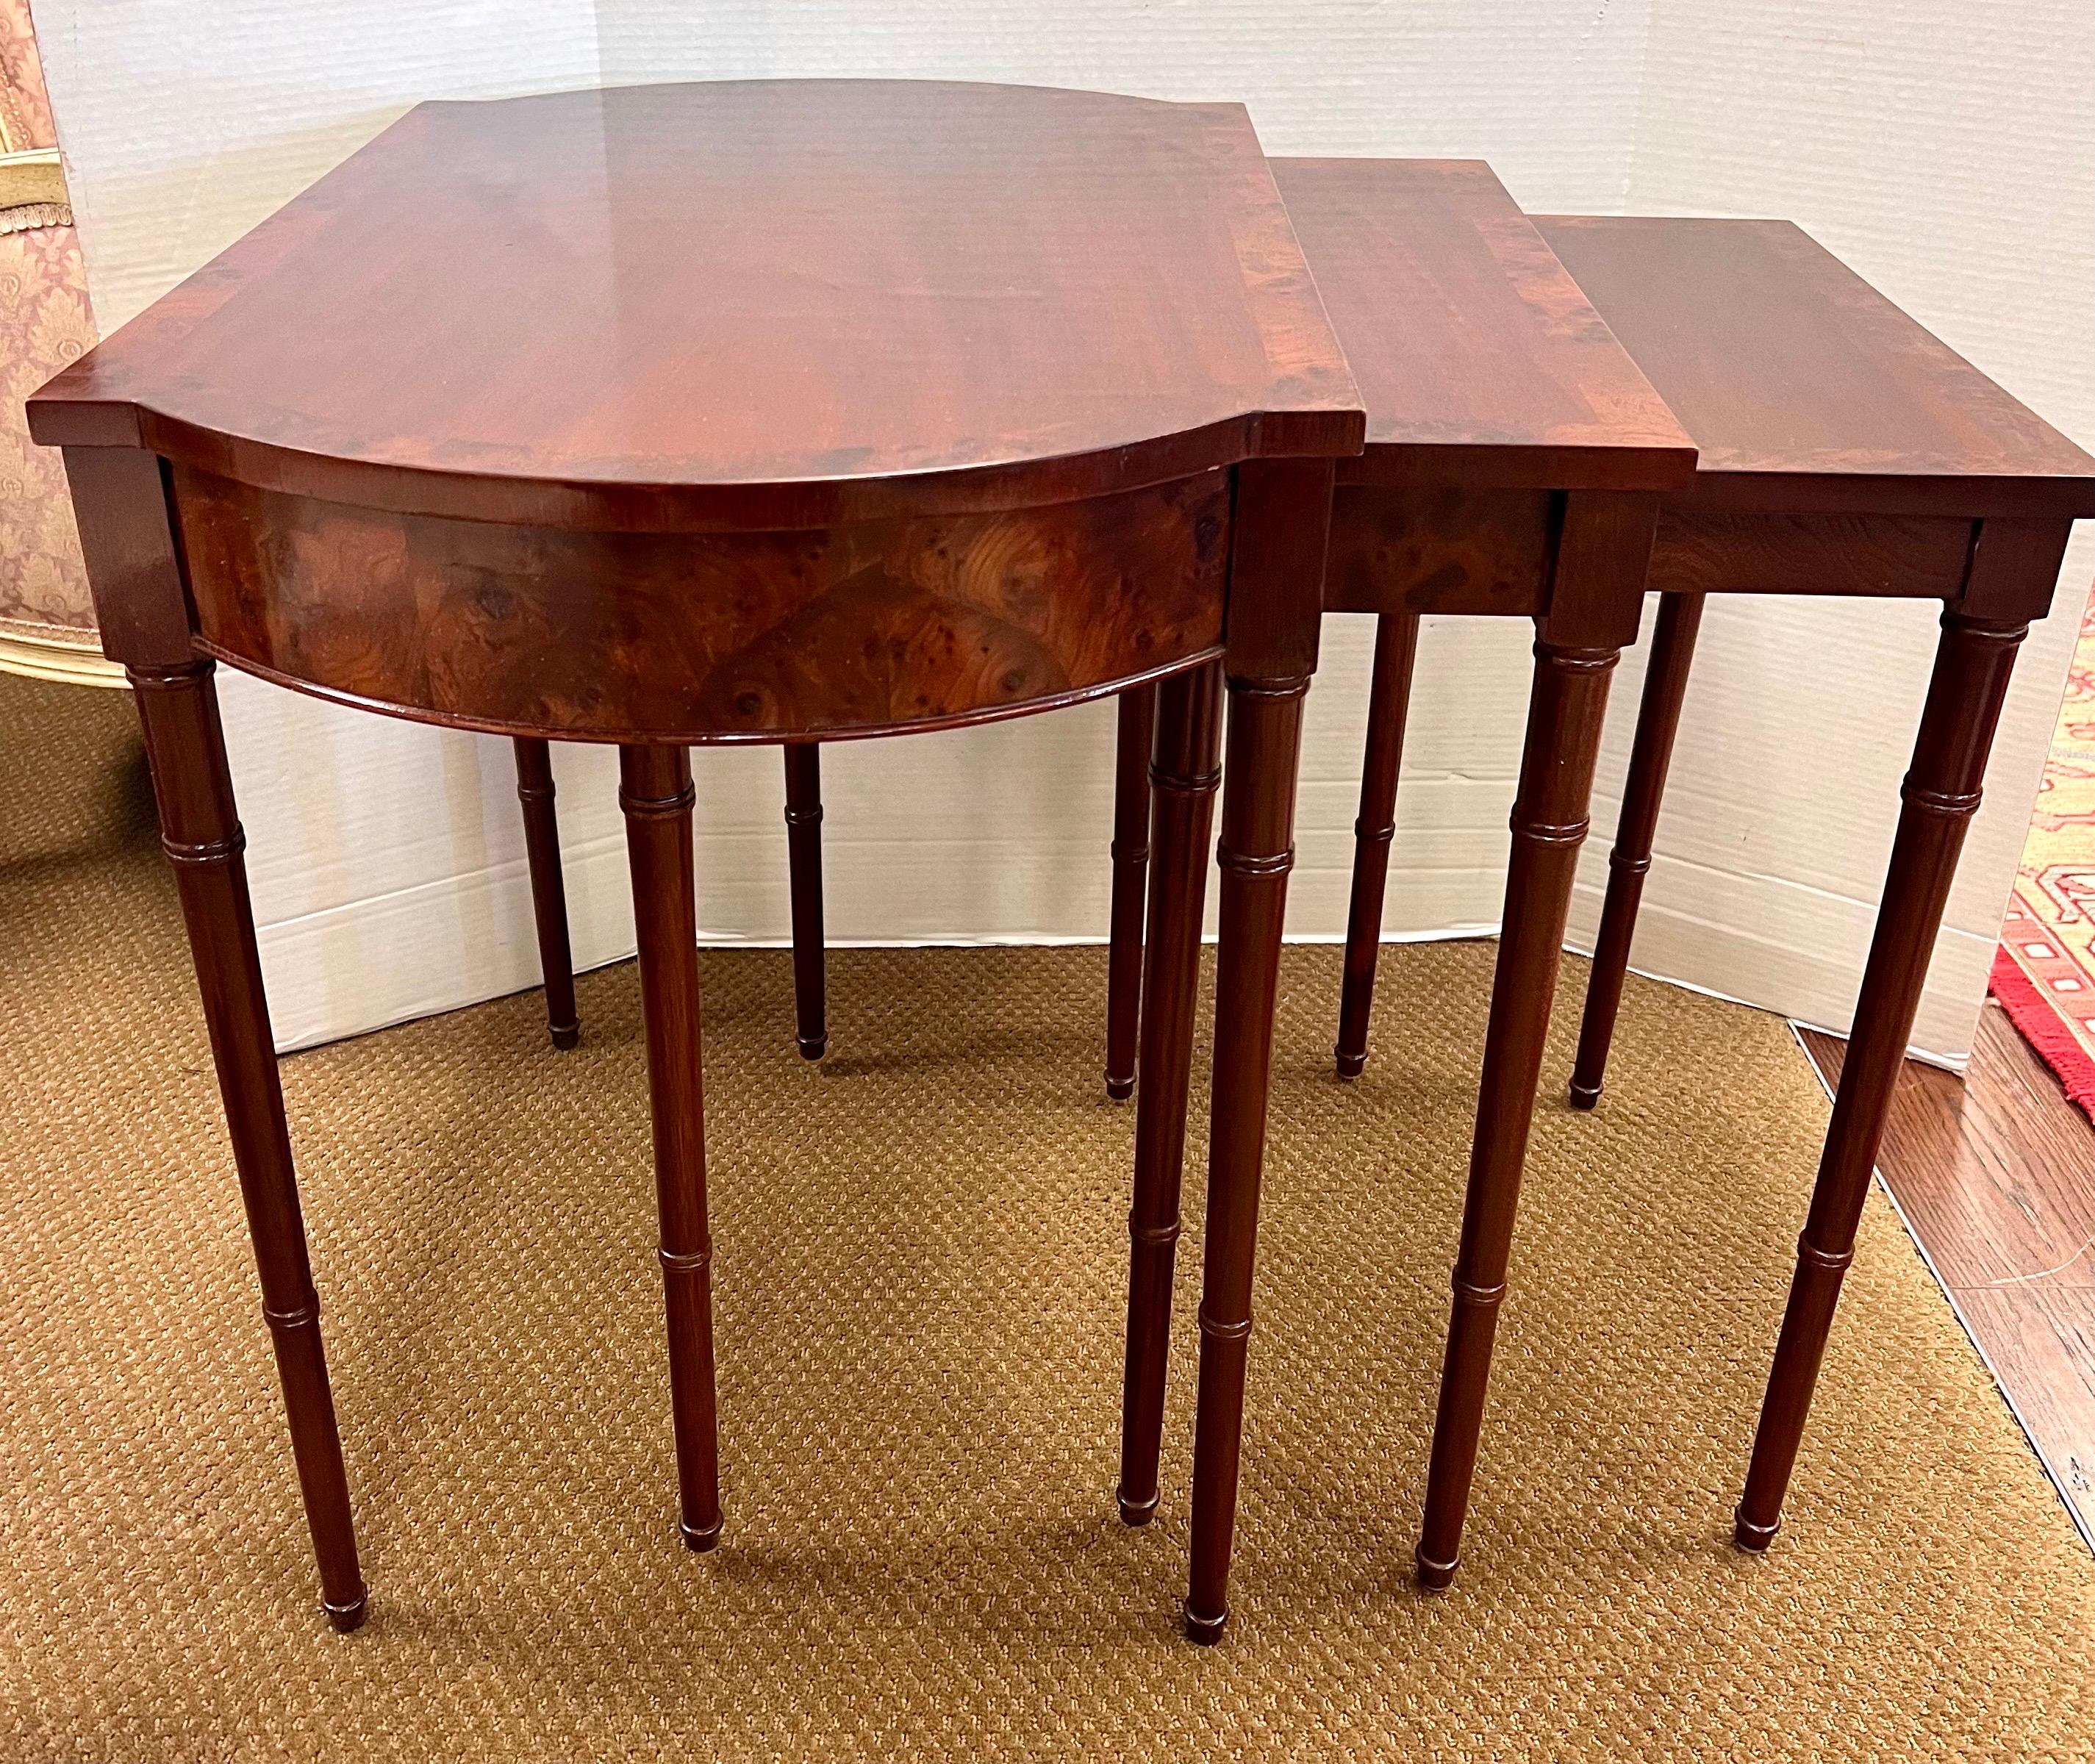 Ensemble de 3 tables gigognes Baker en acajou fabriquées en riche bois d'acajou, ces tables exsudent la sophistication et l'élégance. La conception emboîtable offre une polyvalence et un gain de place, vous permettant d'étendre sans effort votre